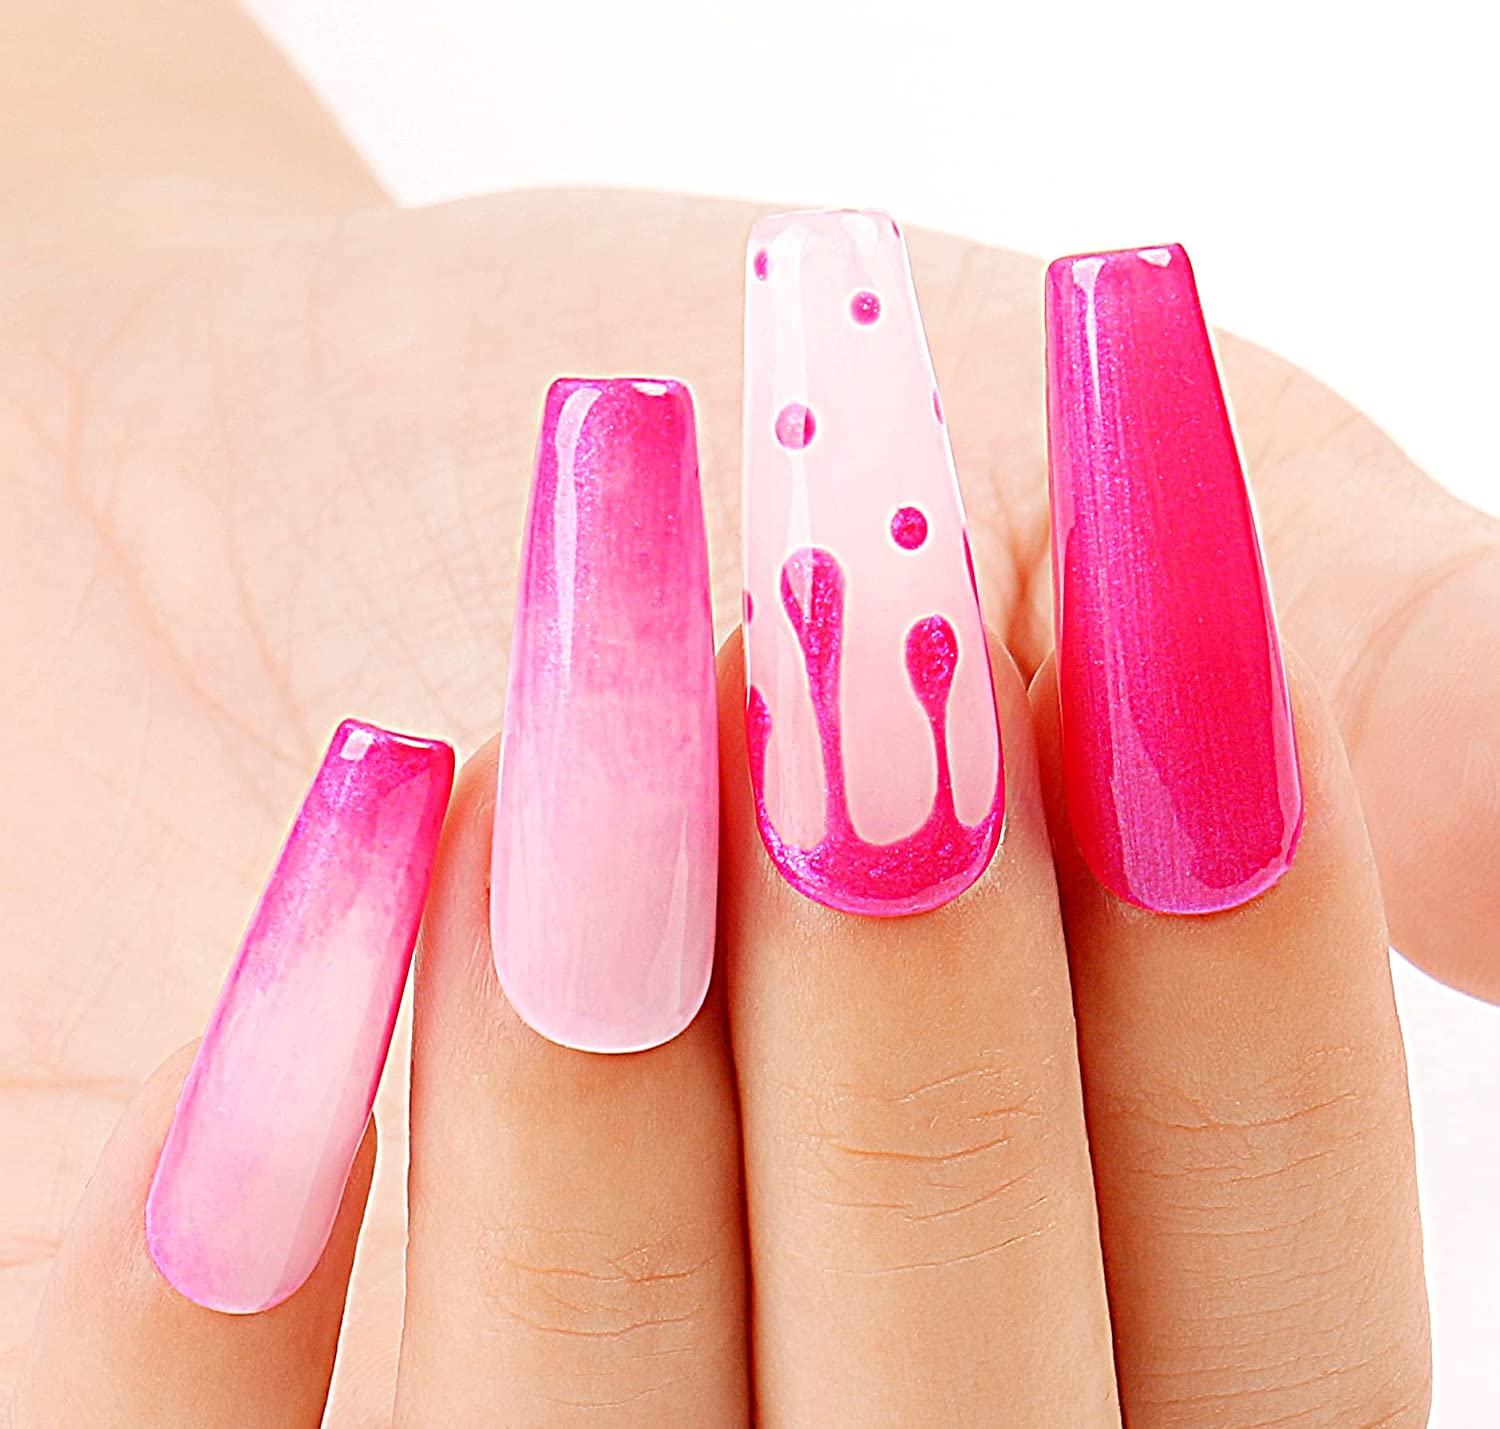 hot pink nail polish colors